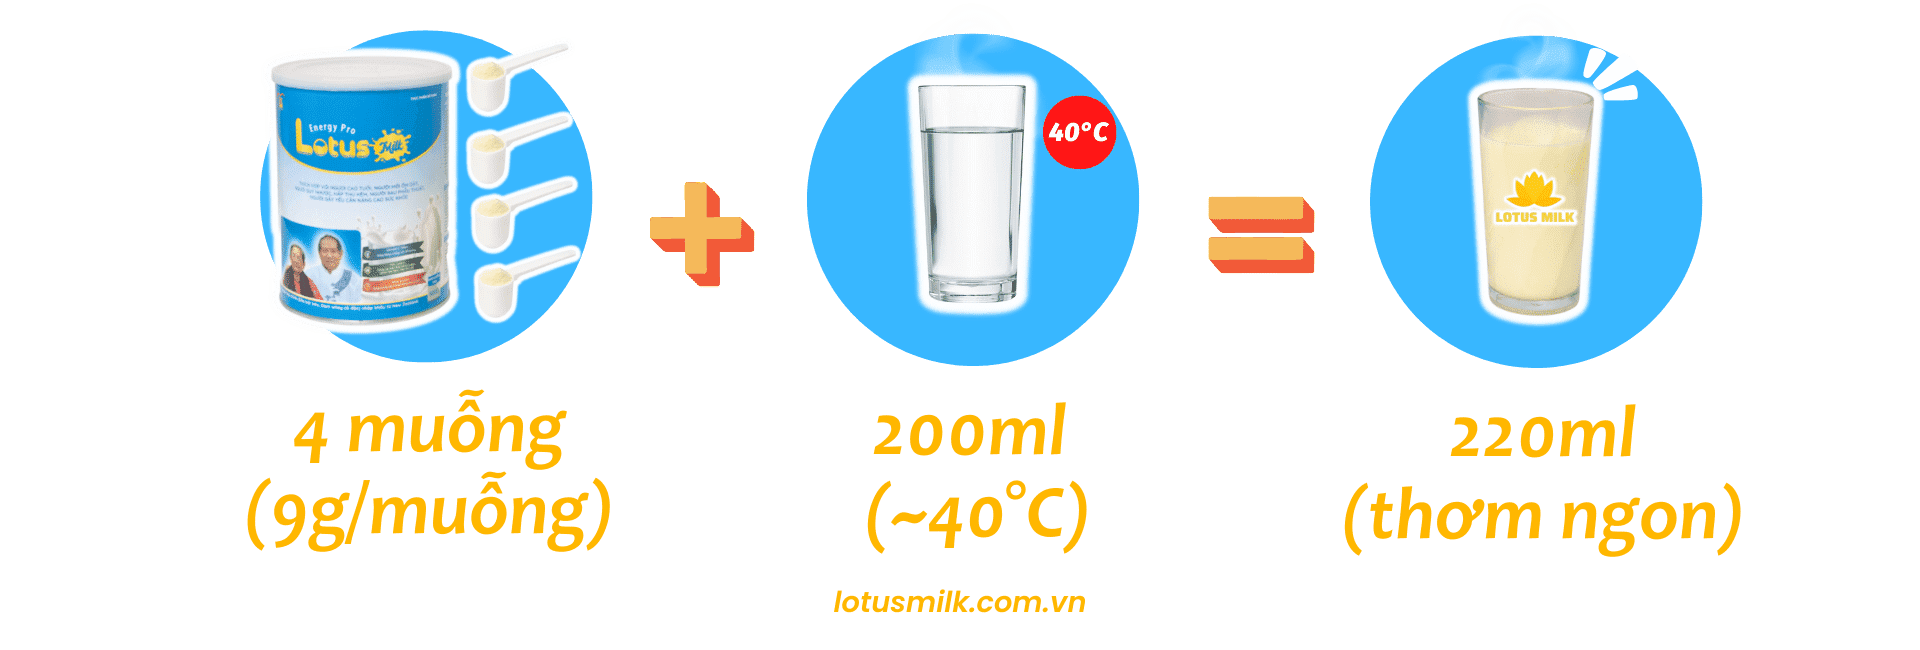 Cách pha sữa Lotus Milk chuẩn